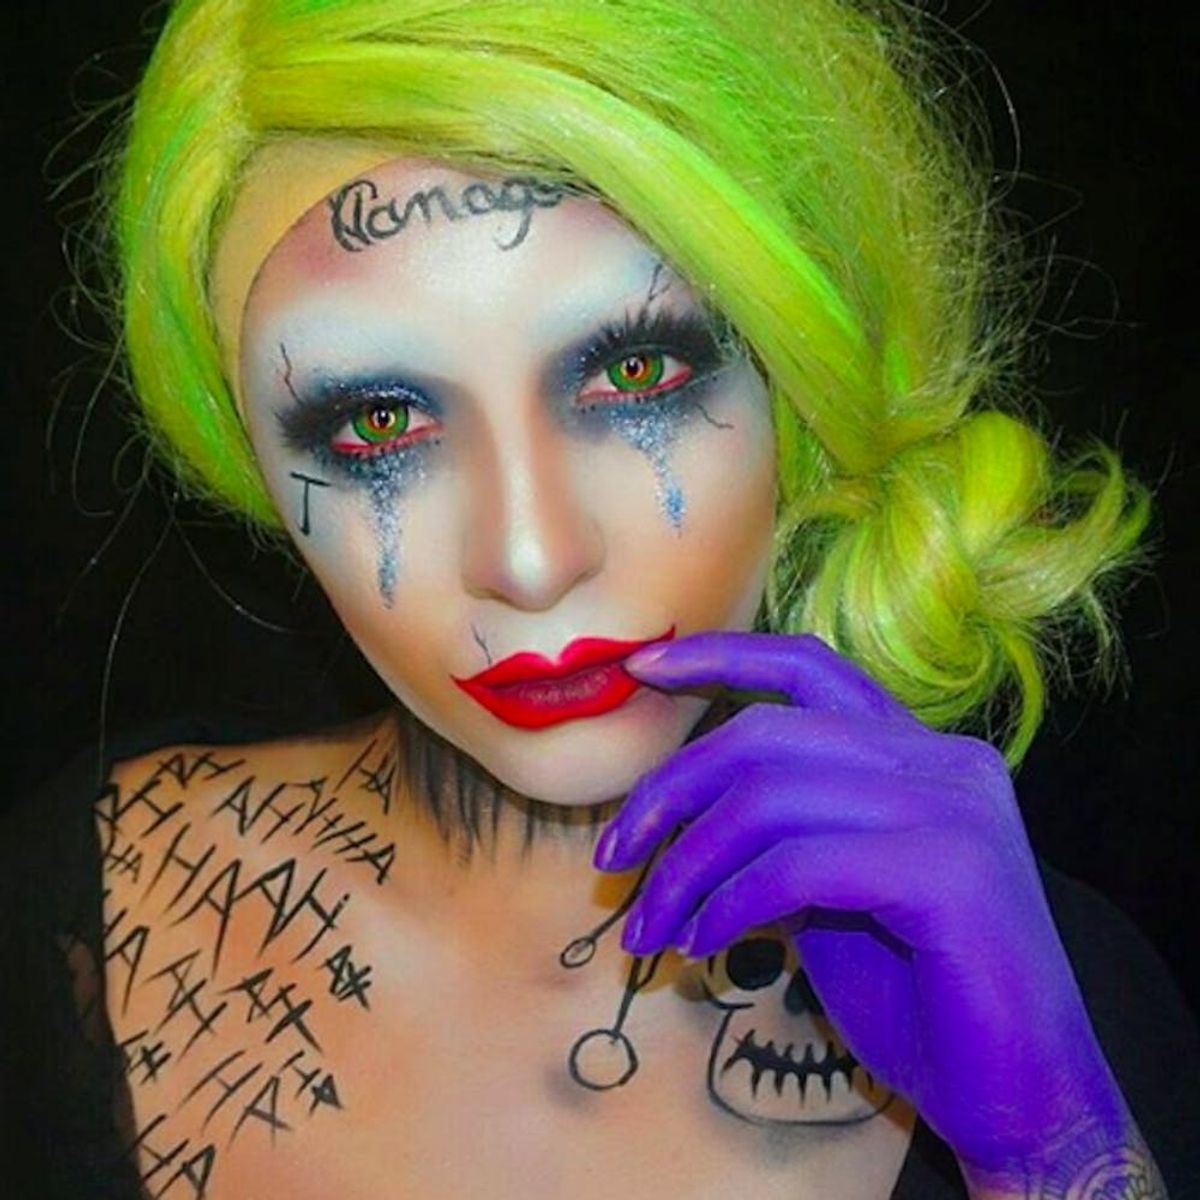 Get Creepy With This Spooky Joker Halloween Makeup